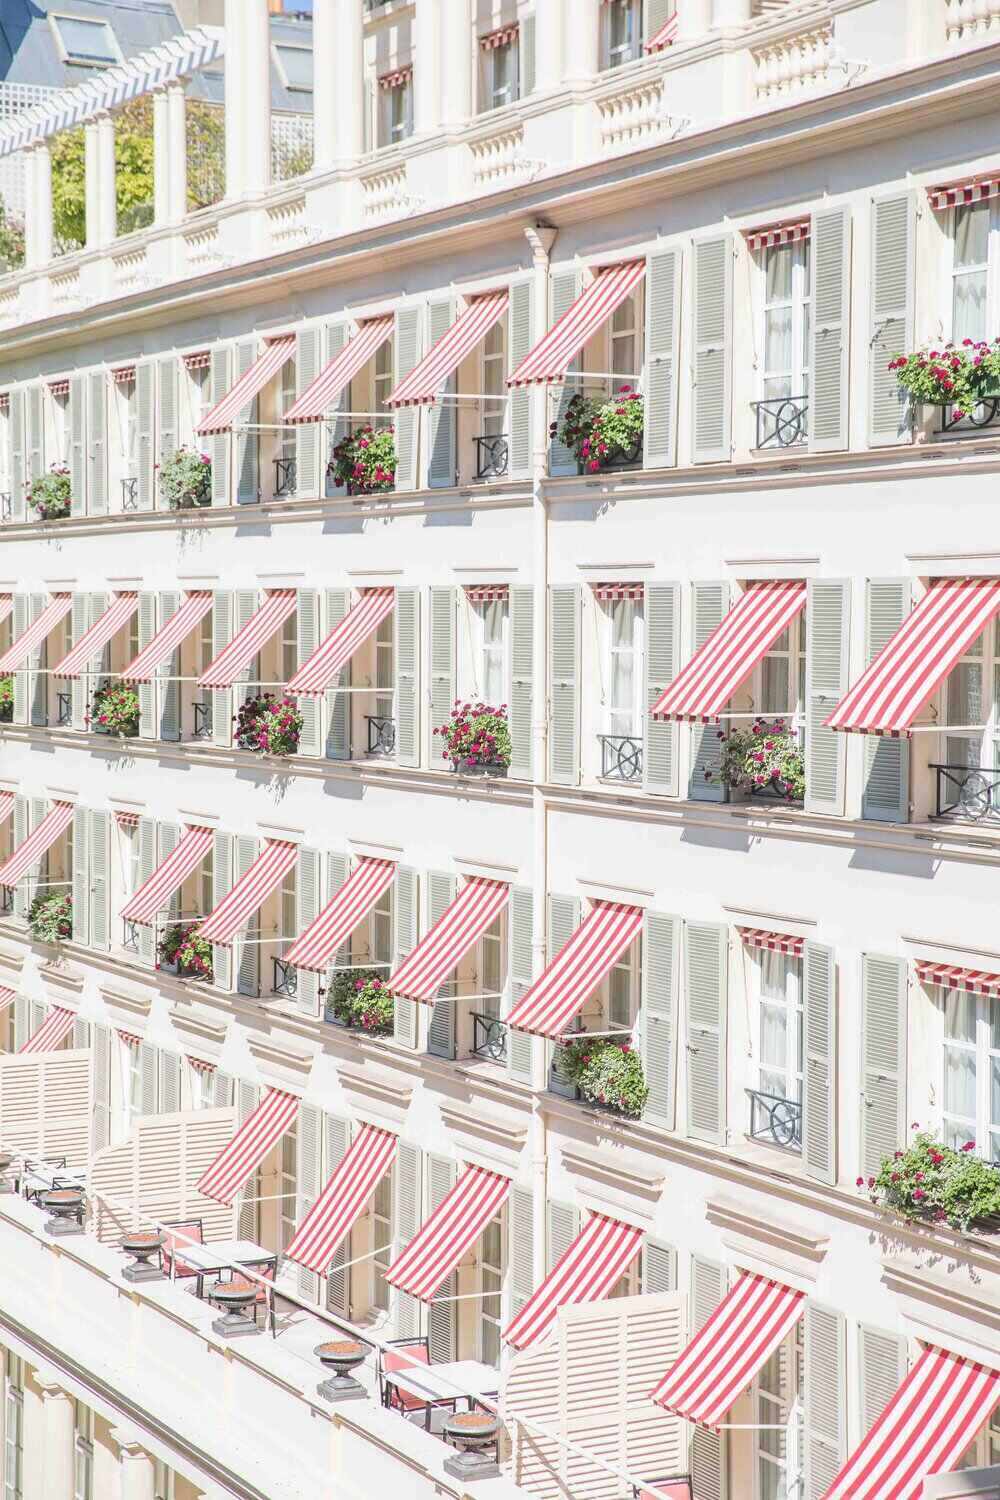 Le Bristol Luxury Hotel in Paris